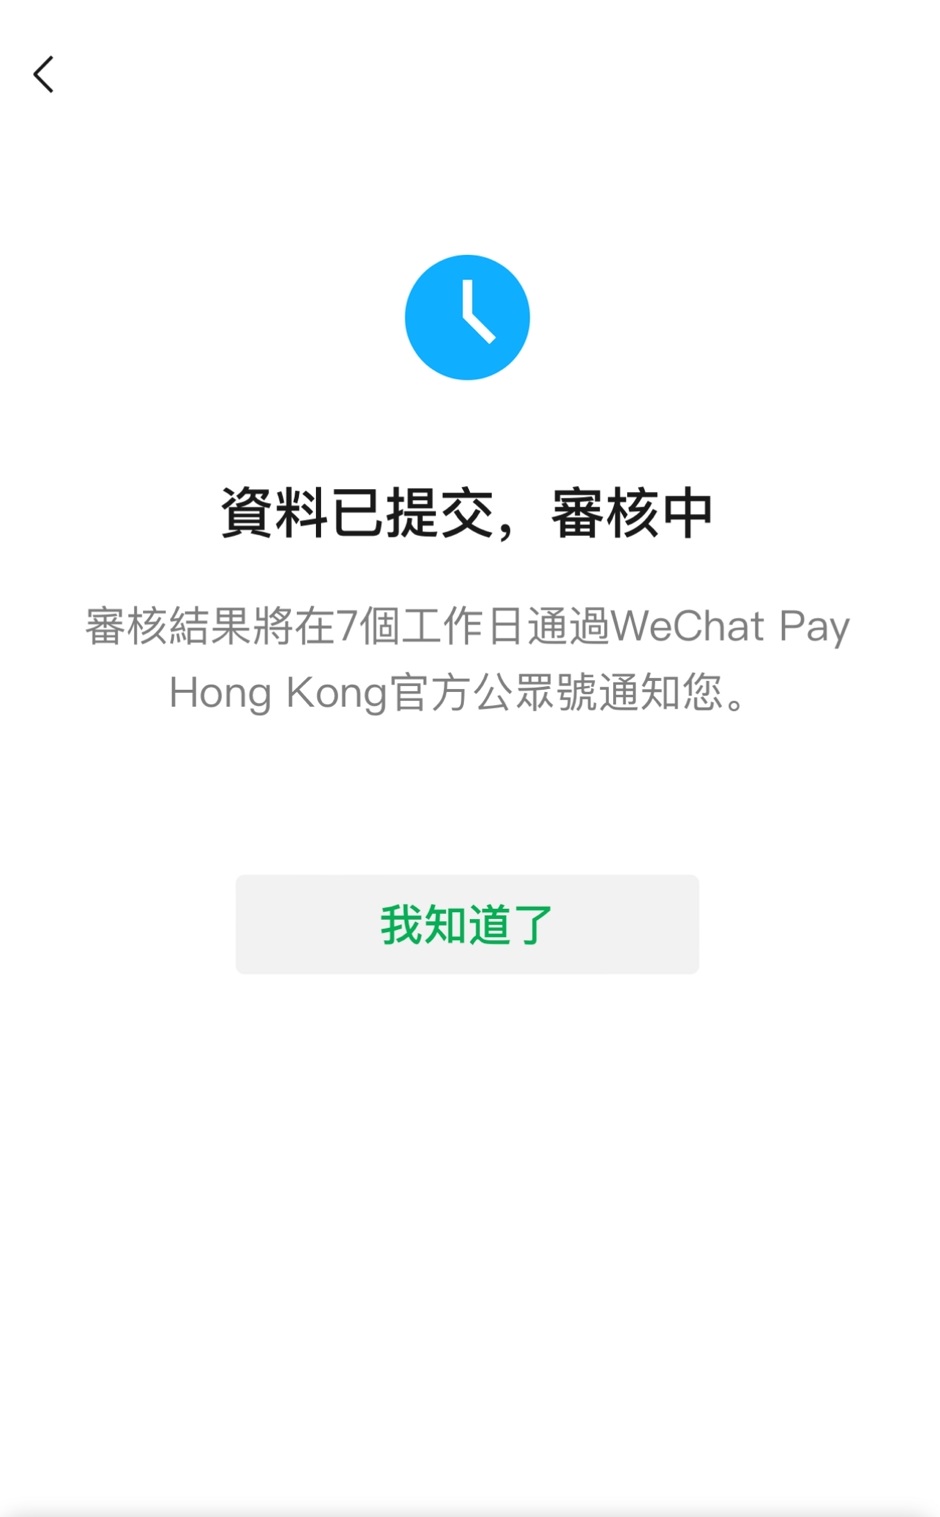 最后画面将显示「资料已提交，审核中」。审核结果将在7个工作日通过WeChat Pay HK官方公众号通知。